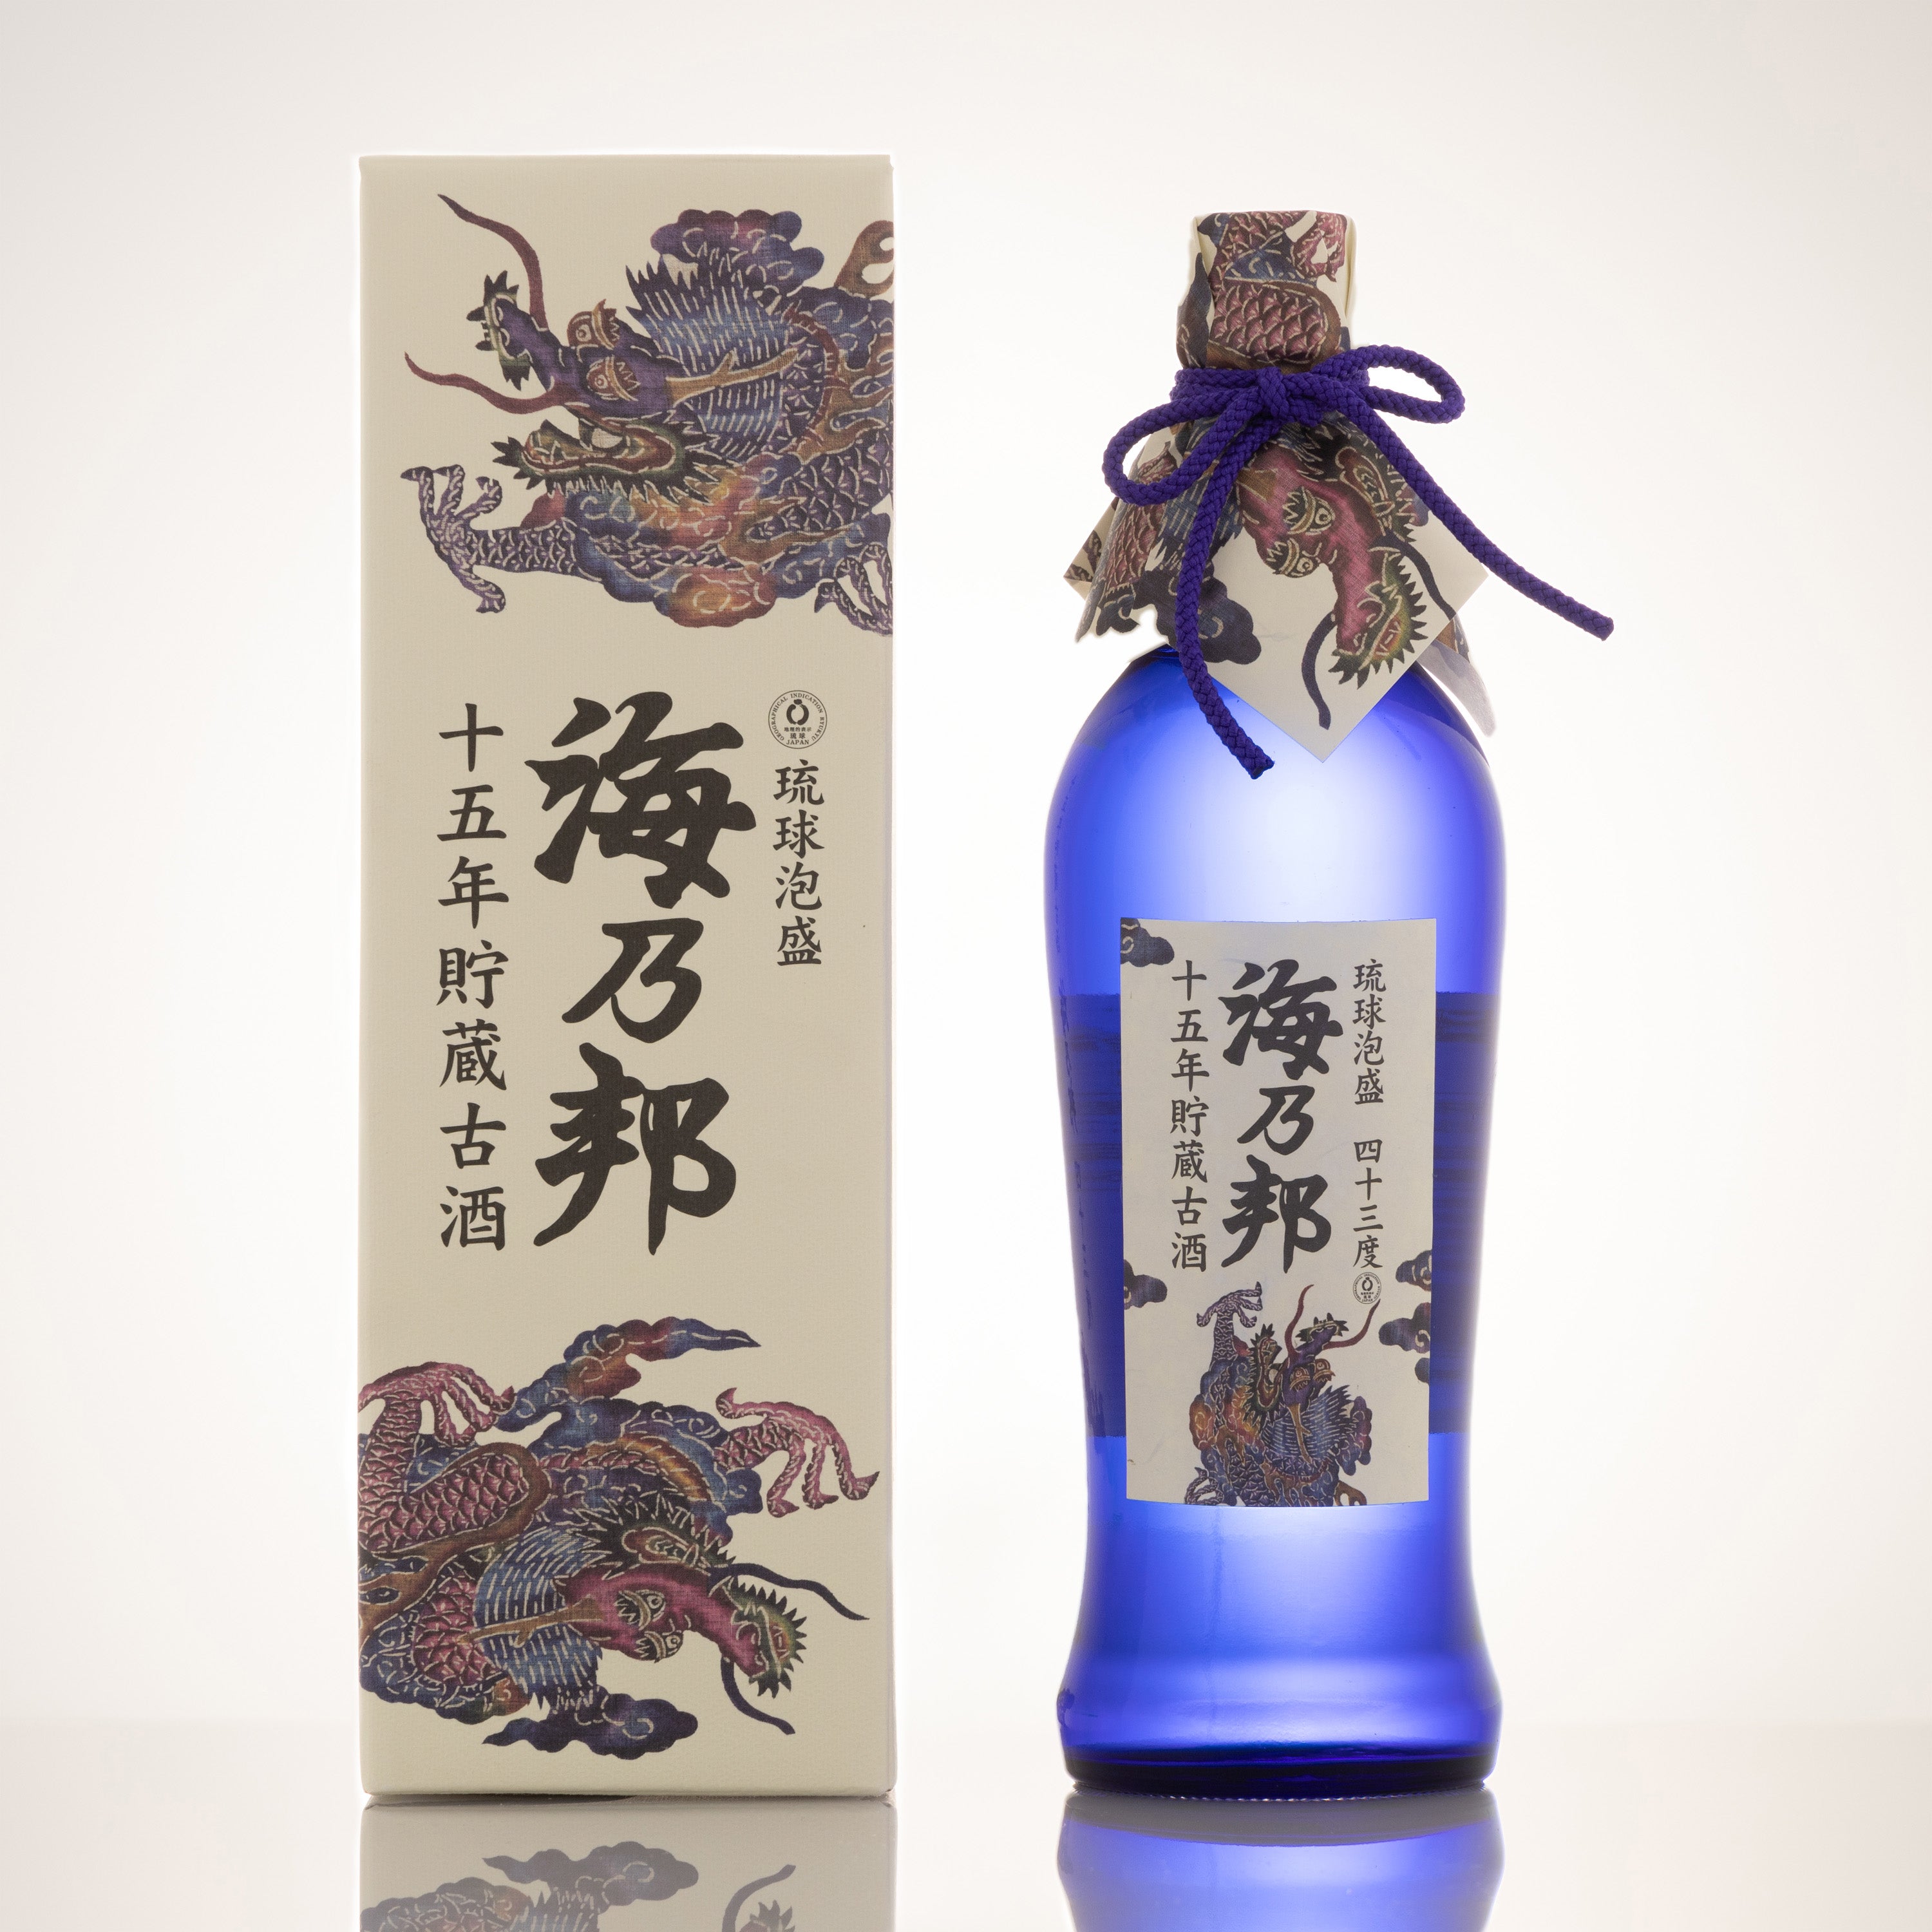 素晴らしい品質 泡盛 沖縄県酒造協同組合 海乃邦 15年古酒 43度,720ml